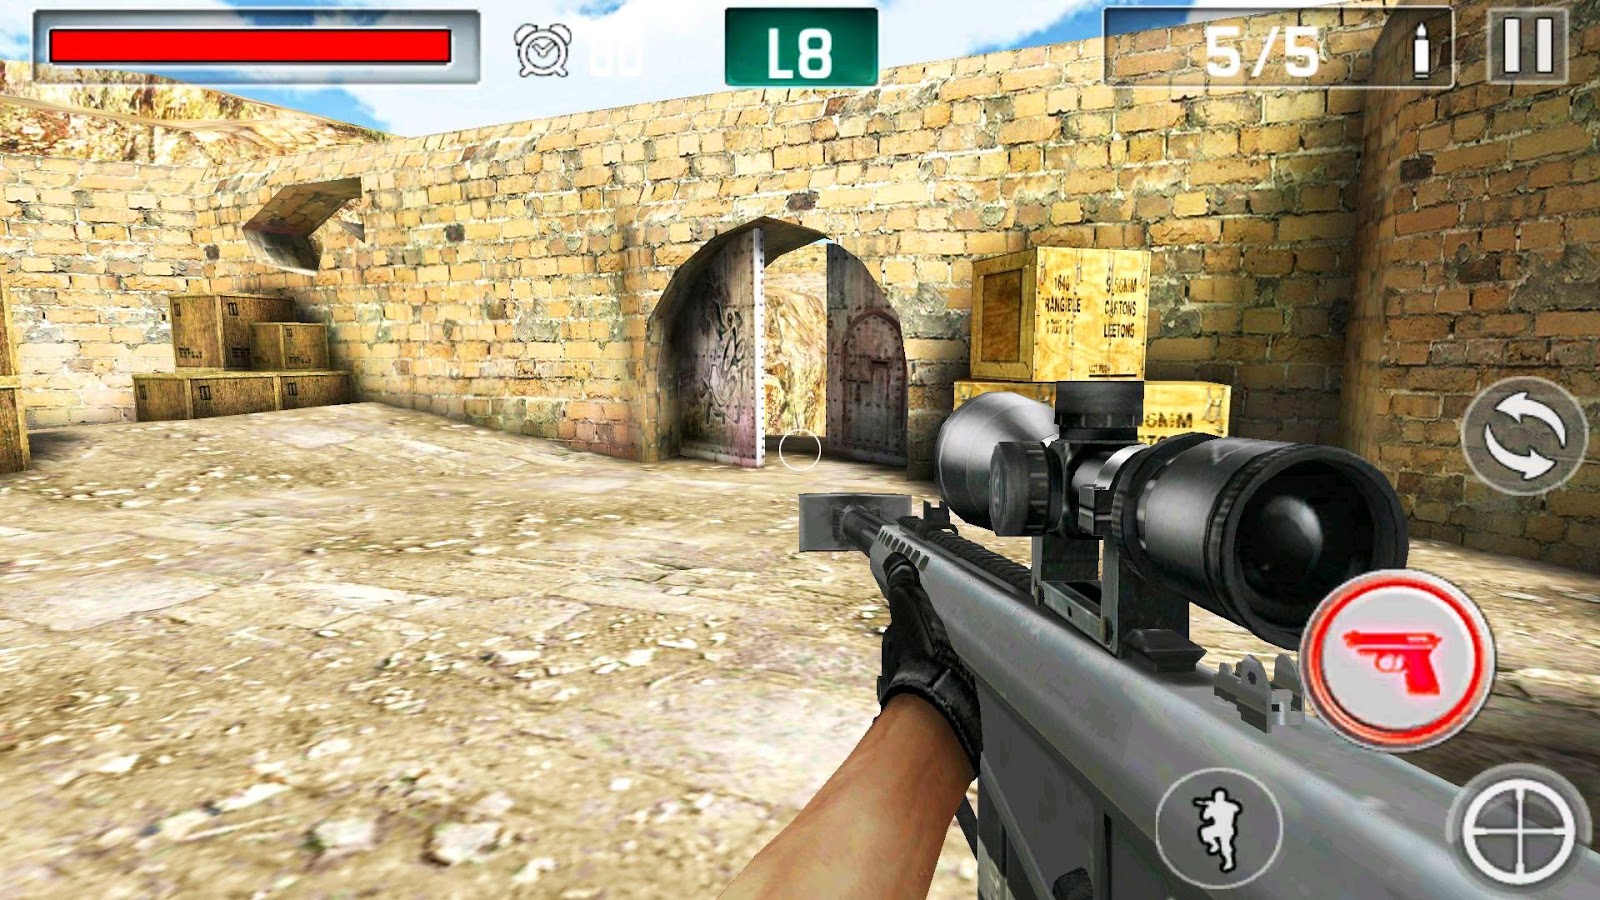 Download game perang gun shooting games download